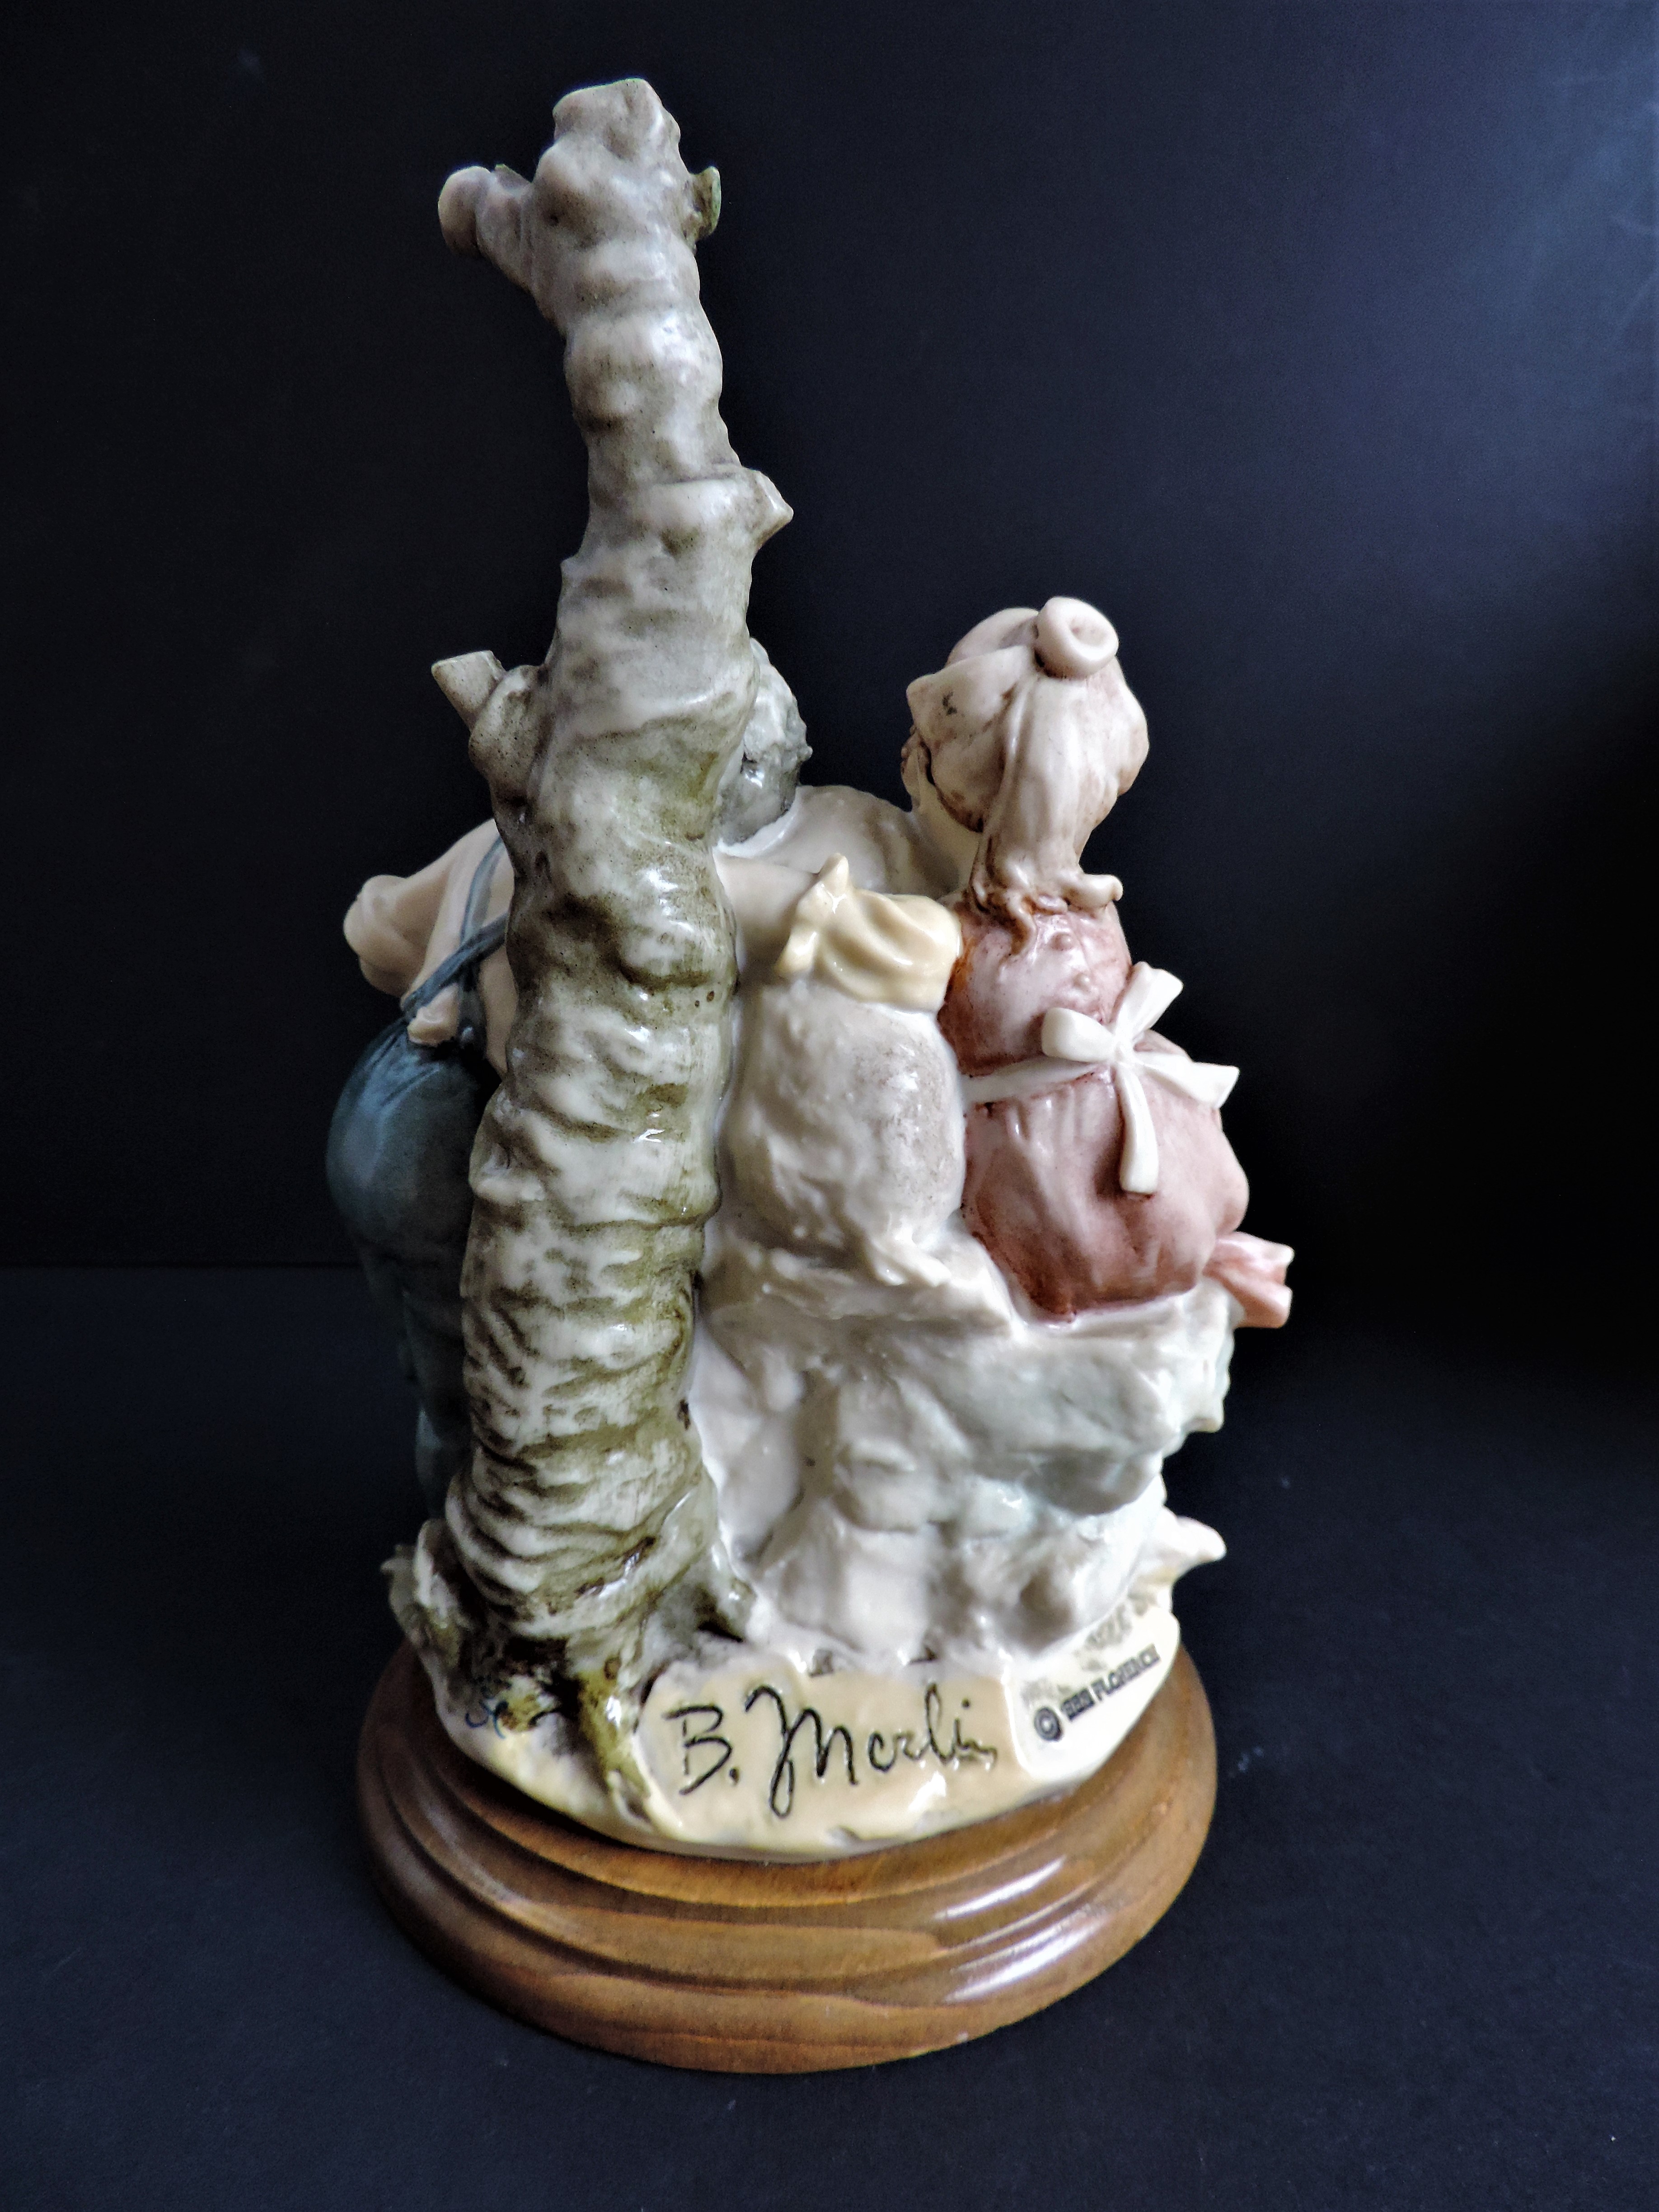 Bruno Merli Naples Porcelain Figurine Florence Italy - Image 4 of 6